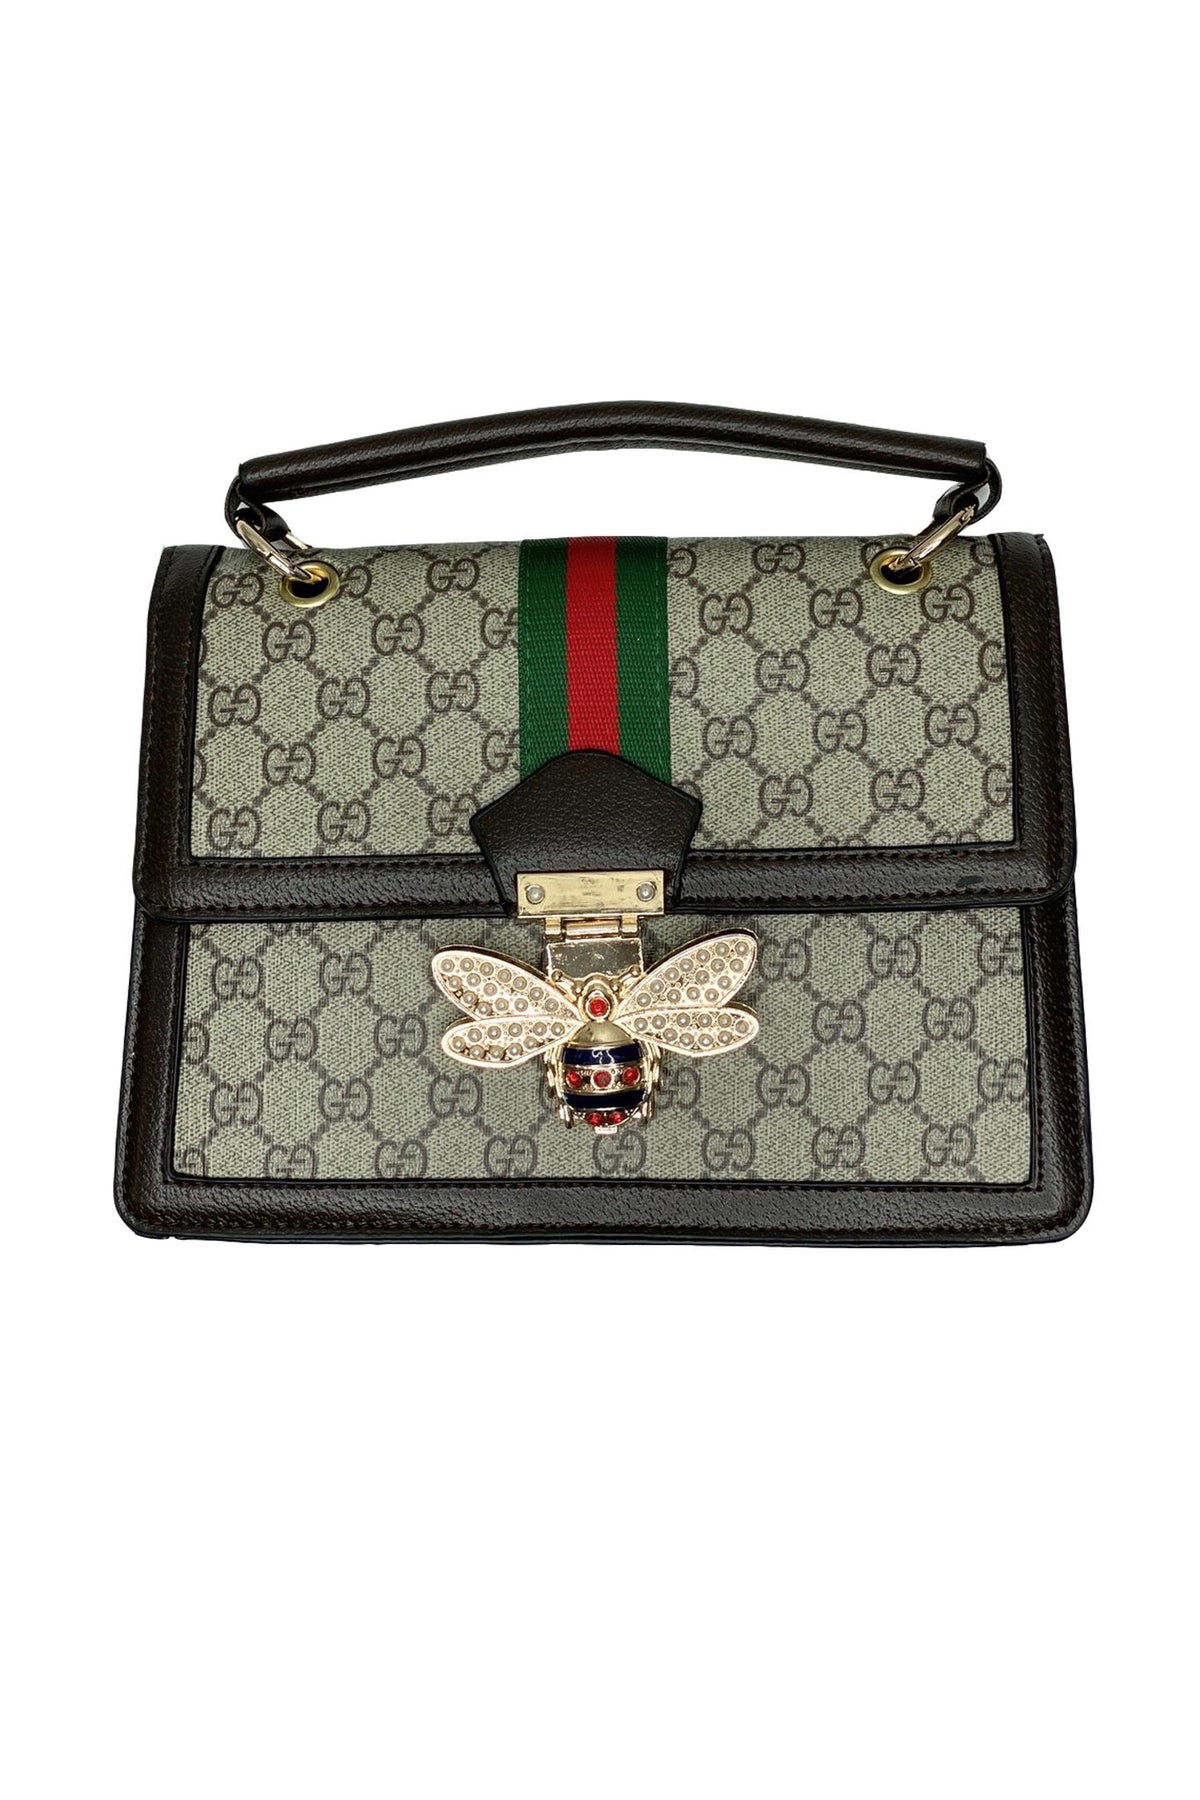 Gucci Queen Margaret Bee Clasp Bag 